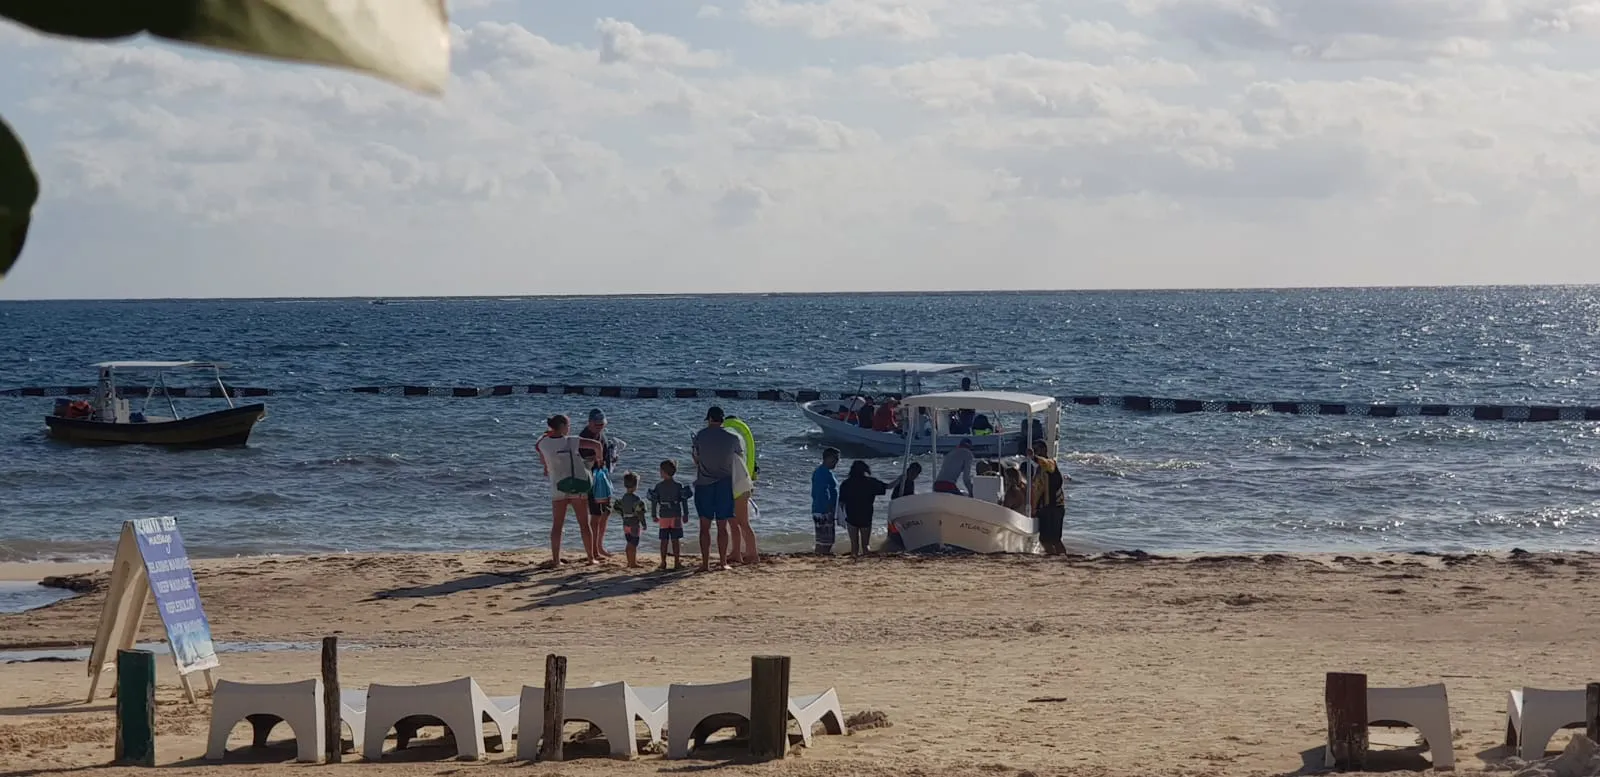 Familia partiendo en un bote mientras otro grupo espera a que el otro bote este listo | Cancun Snorkeling